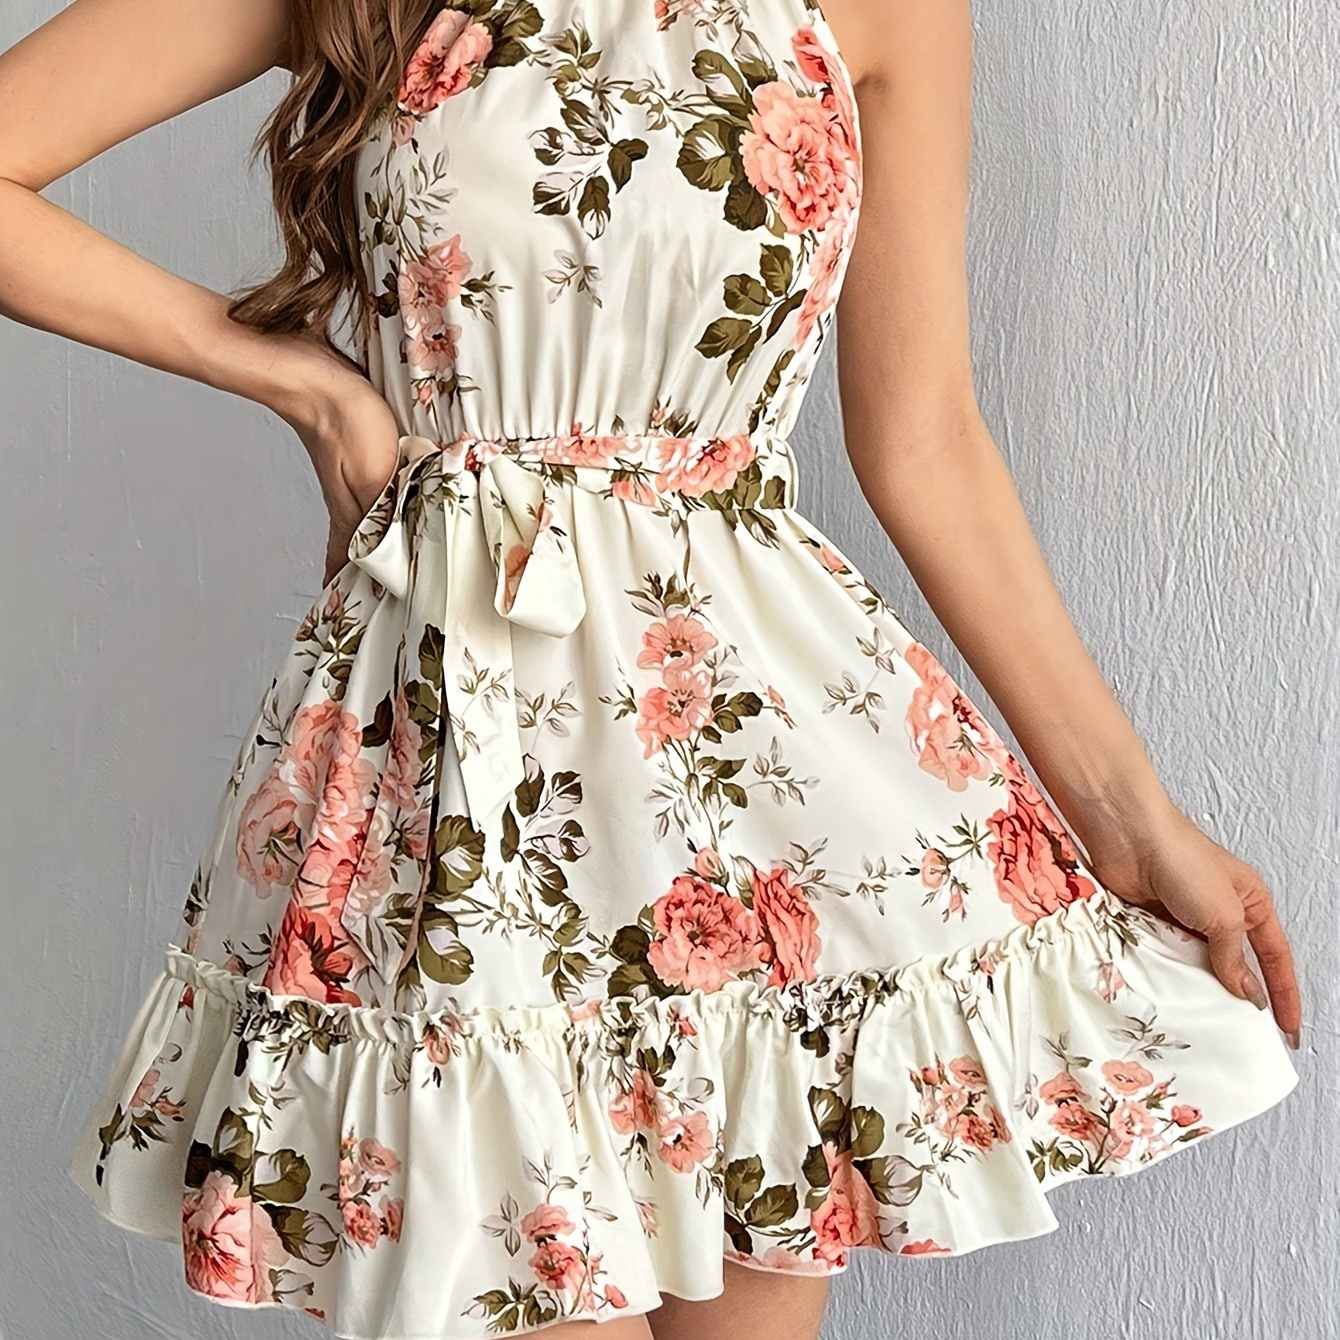 

Floral Print Ruffle Hem Dress, Elegant Belted Sleeveless Halter Dress For Spring & Summer, Women's Clothing